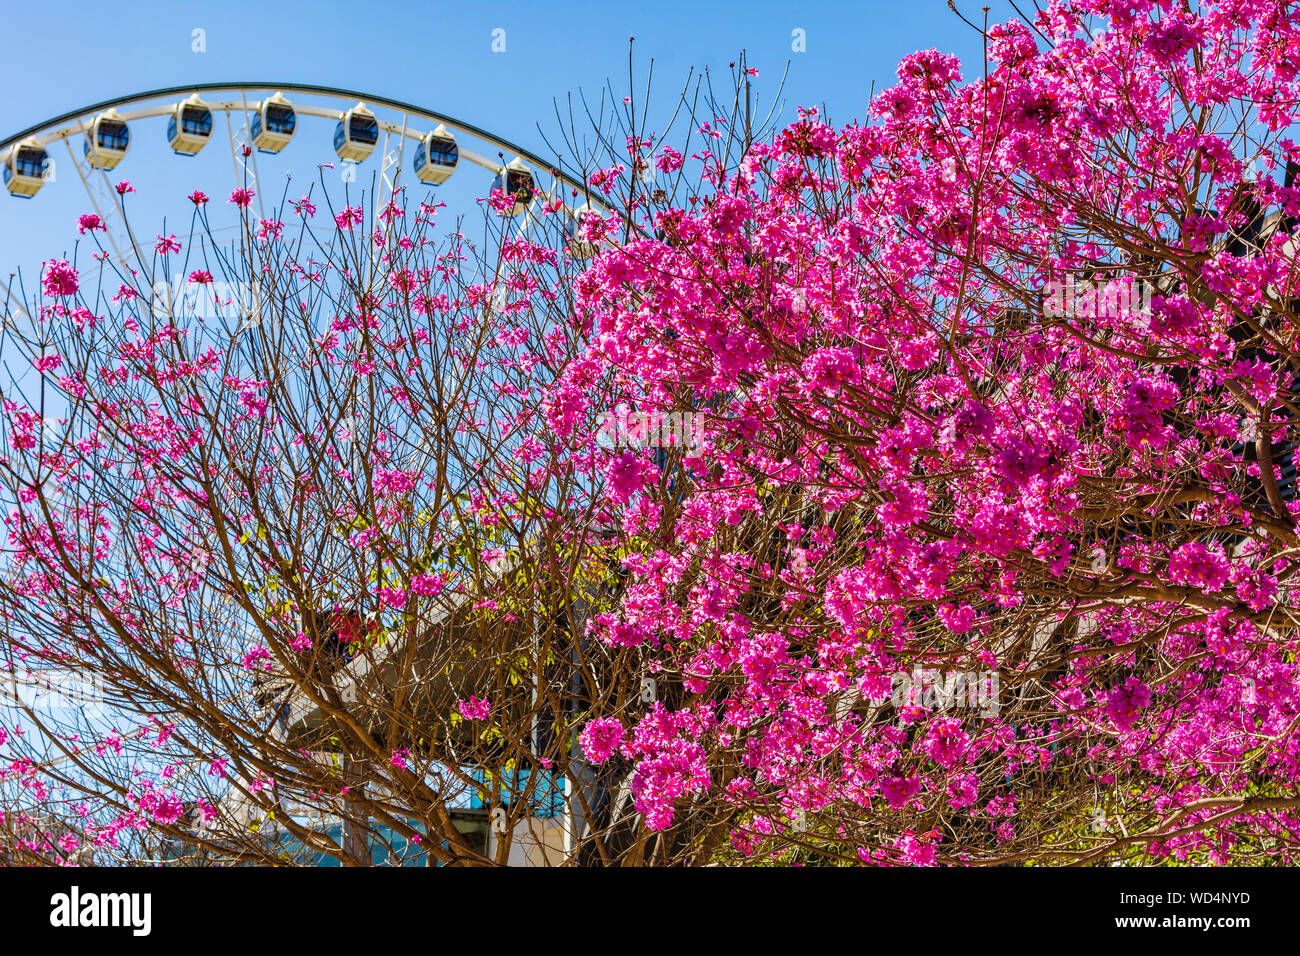 Fleurs trompettes roses en fleurs sur un arbre dans la ville de Brisbane en Australie, avec une grande roue à l'arrière-plan Banque D'Images